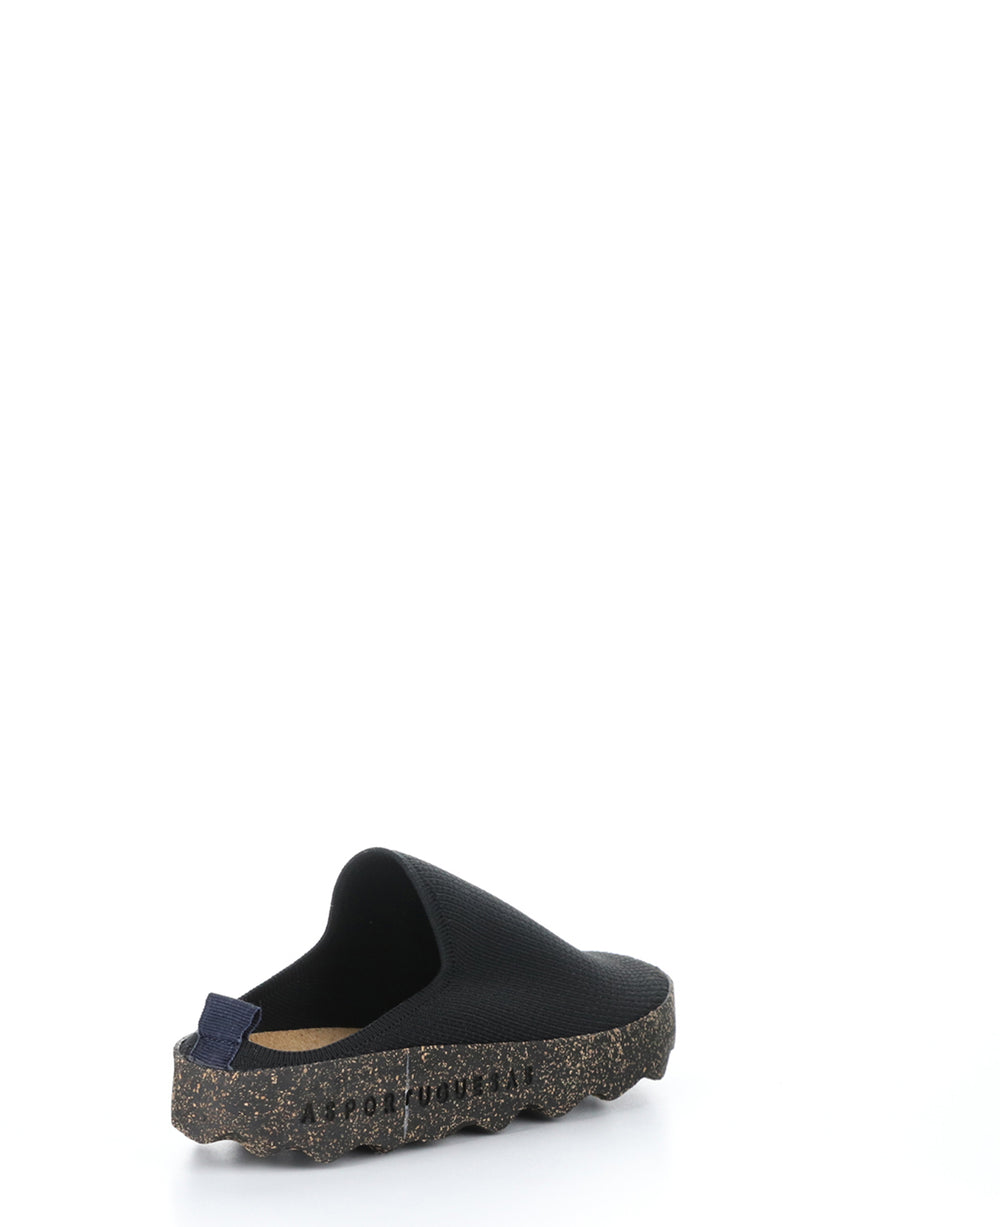 CLOG105ASPM BLACK Slip-on Shoes